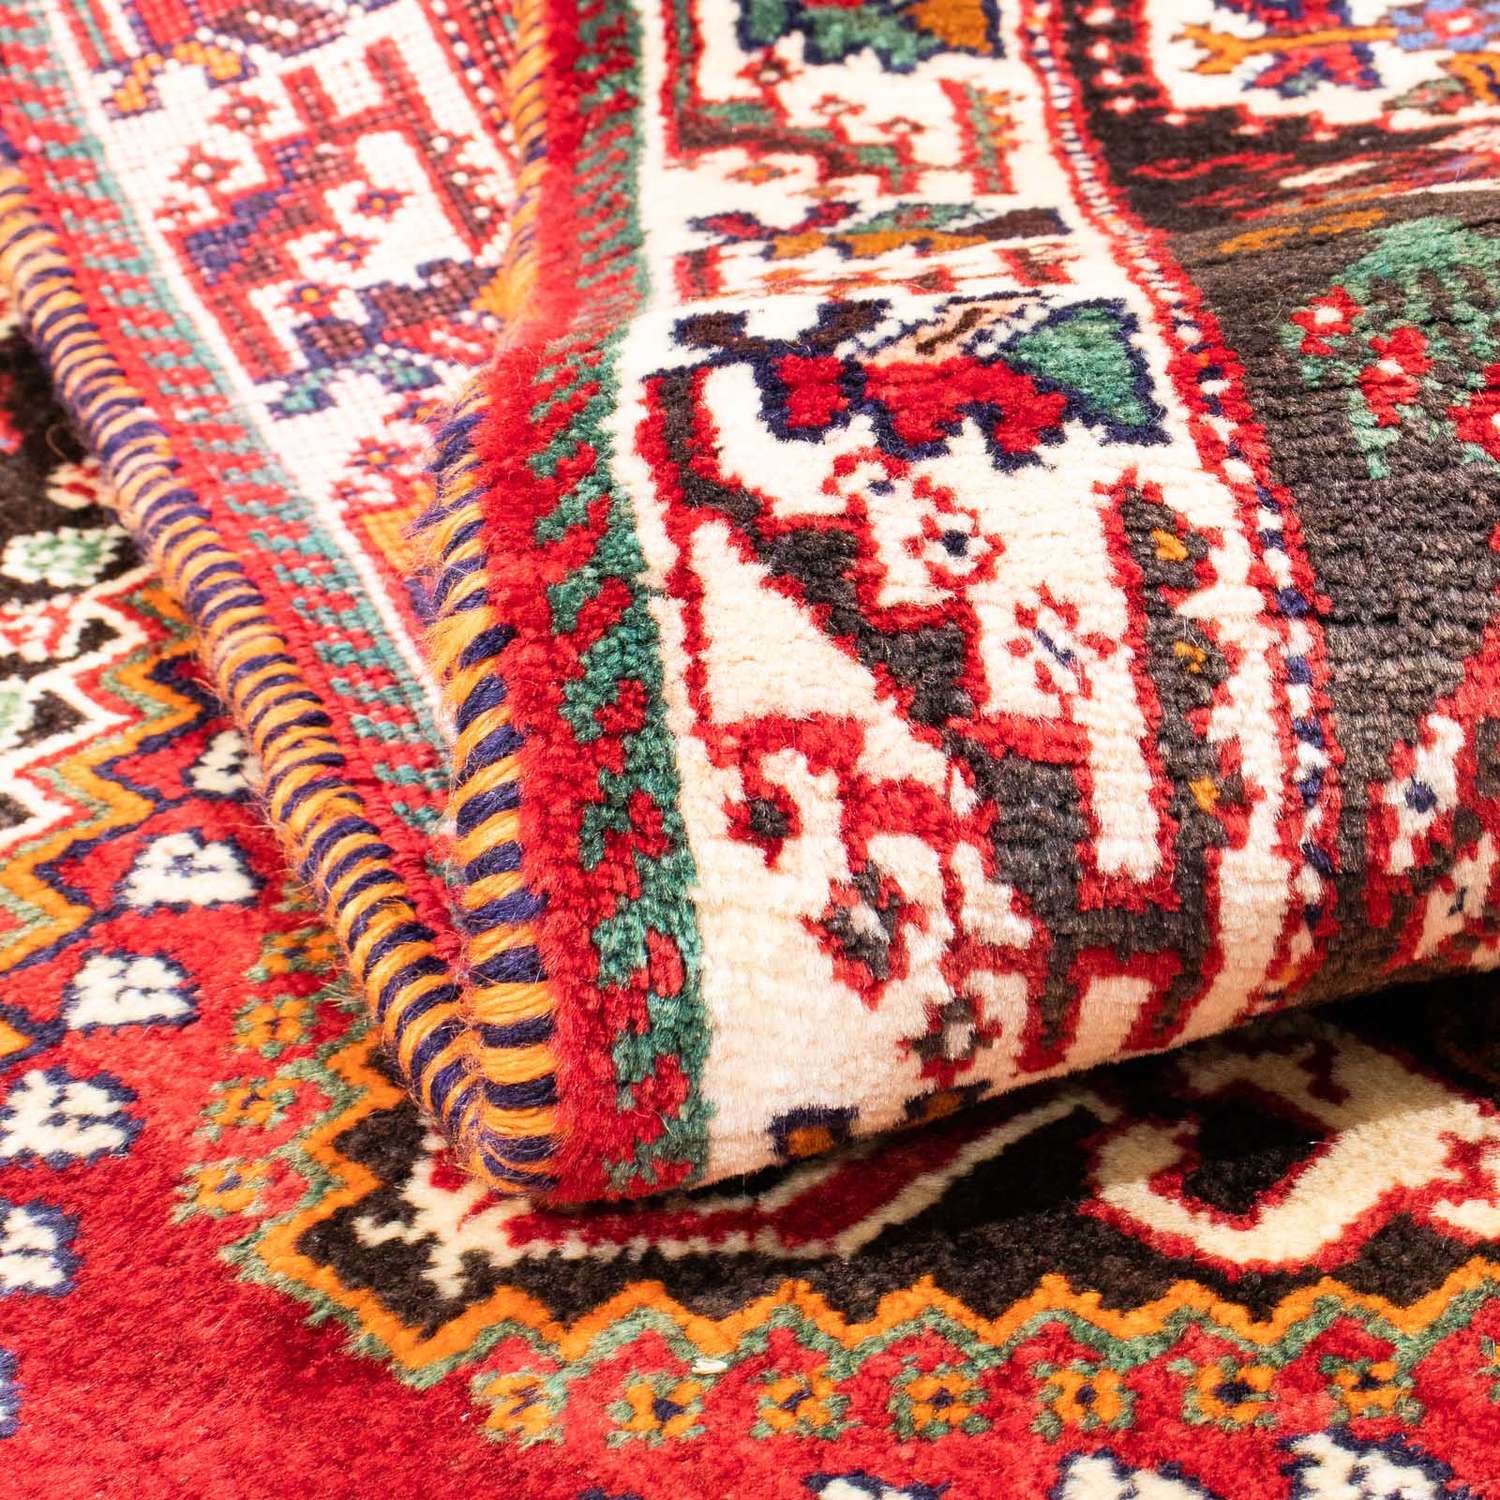 Persisk teppe - Nomadisk - 162 x 114 cm - mørk rød